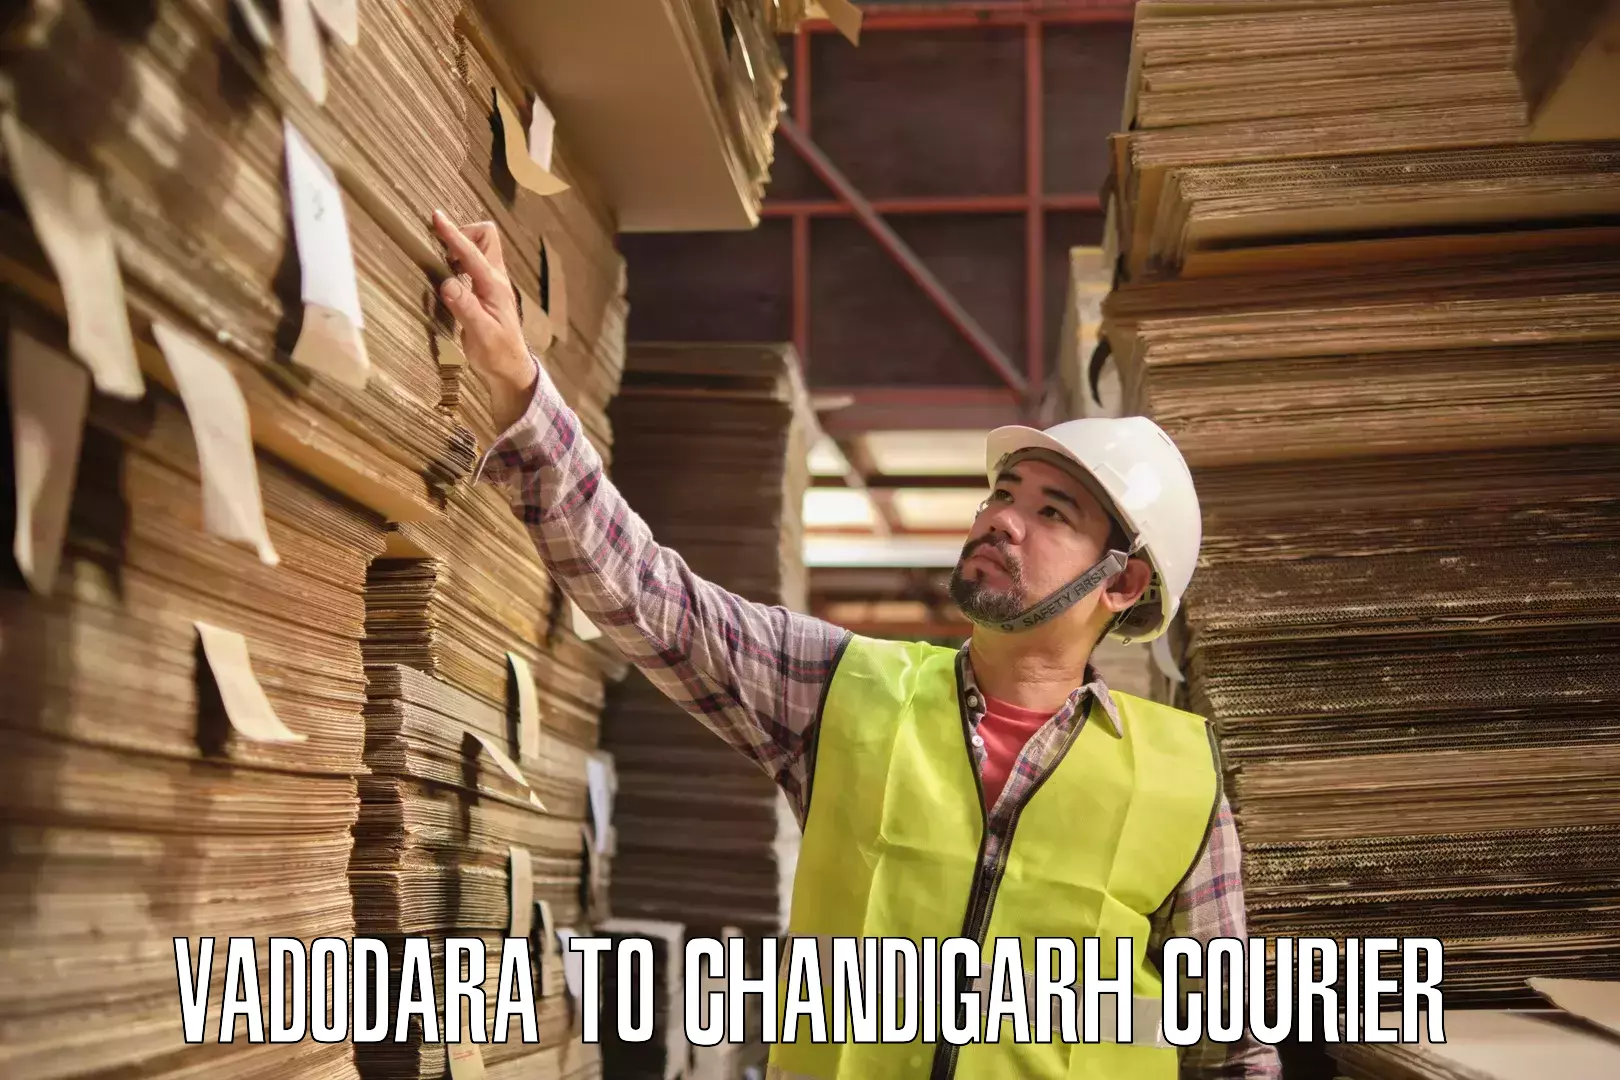 Return courier service Vadodara to Chandigarh